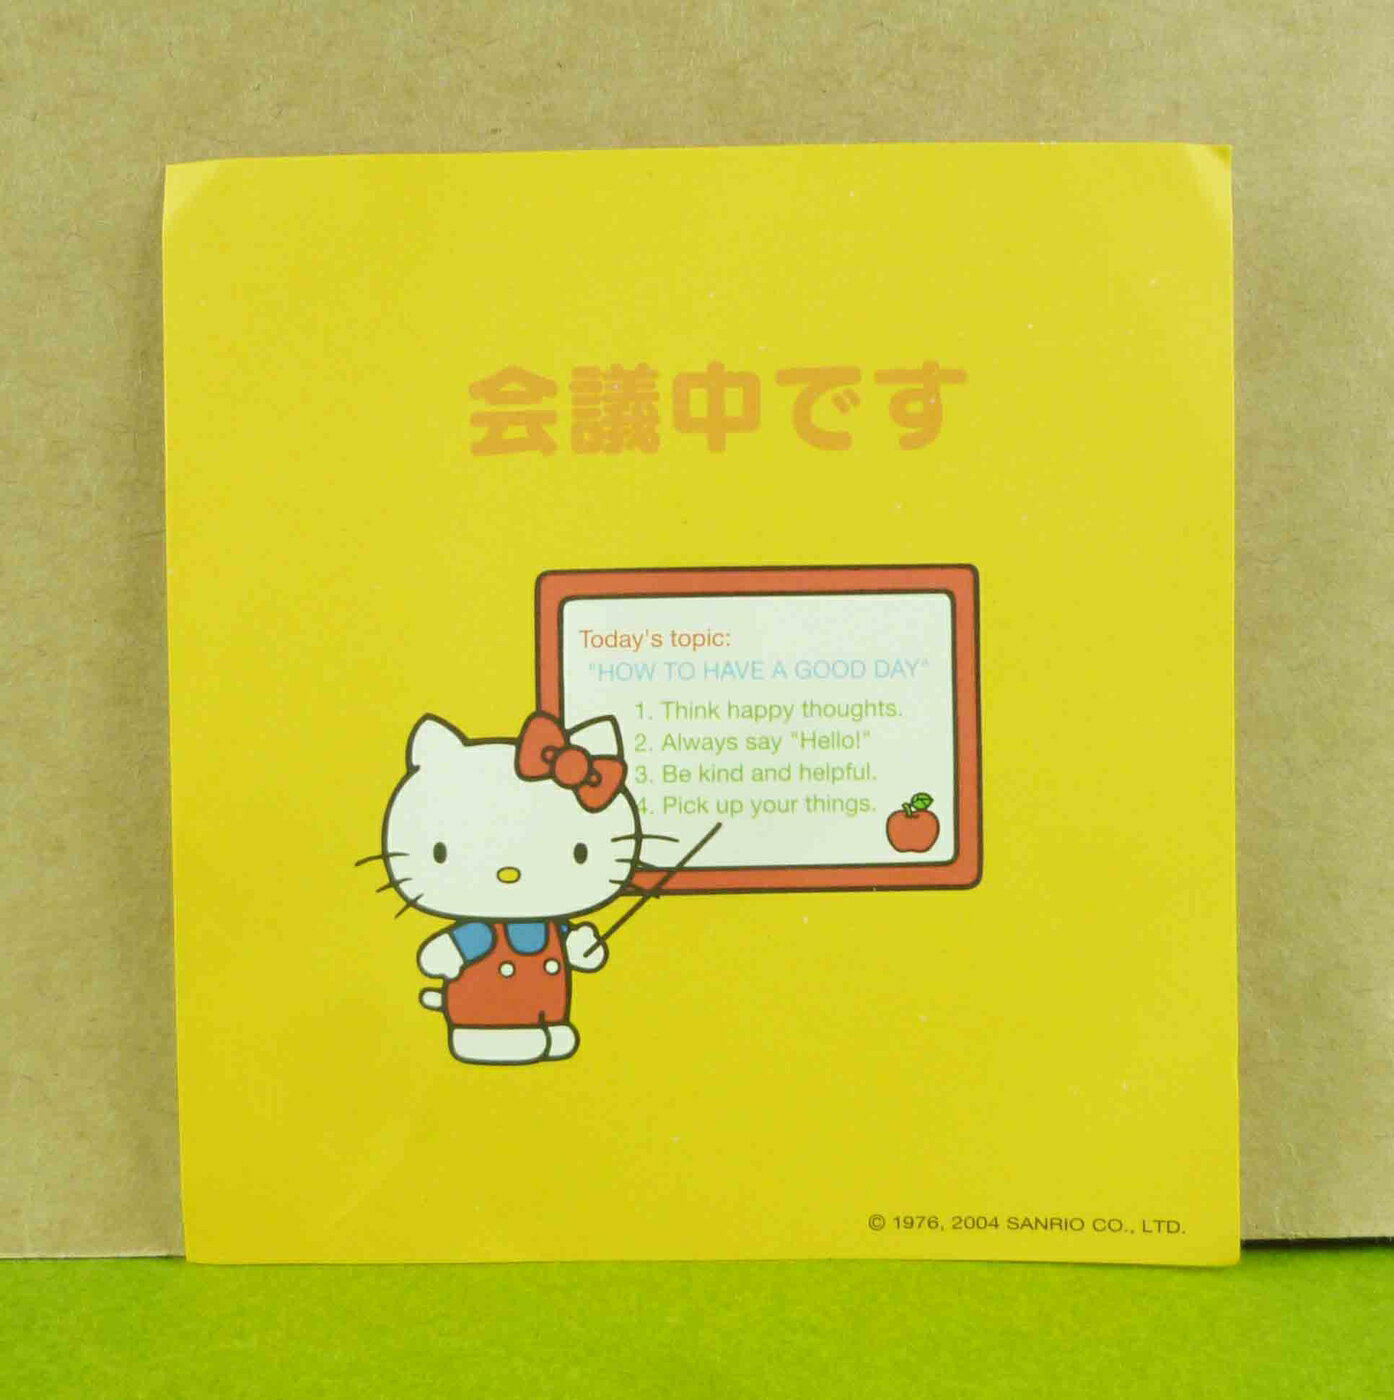 【震撼精品百貨】Hello Kitty 凱蒂貓 造型卡片-黃會議 震撼日式精品百貨